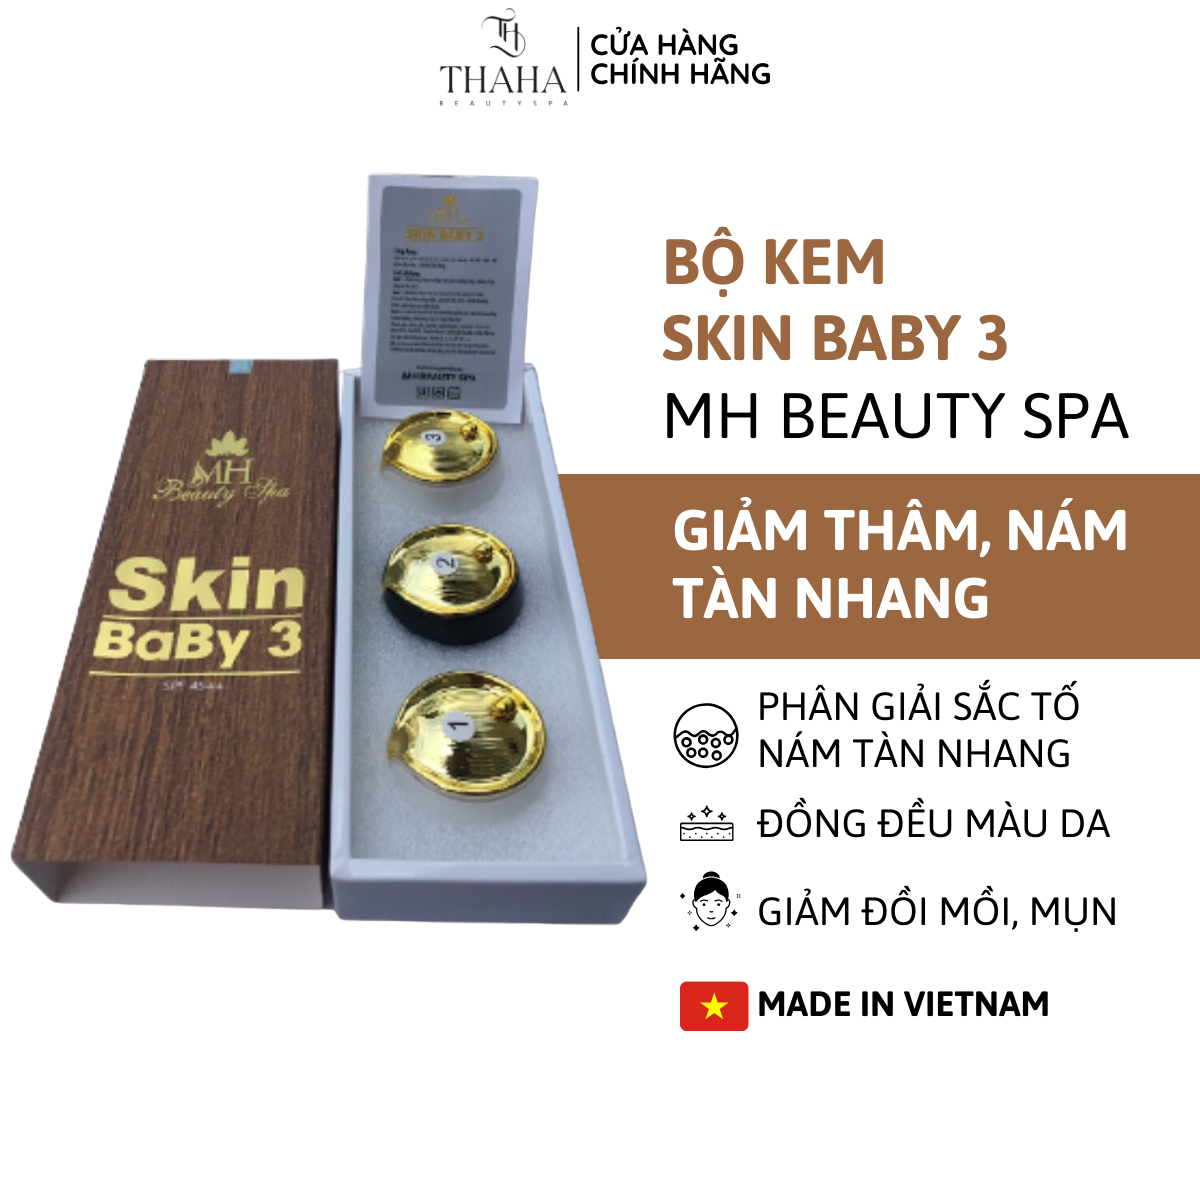 [CHÍNH HÃNG] Bộ kem skin baby 3 MH Beauty Spa Nám mh giảm thâm nám tàn nhang đồi mồi mụn chống nắng